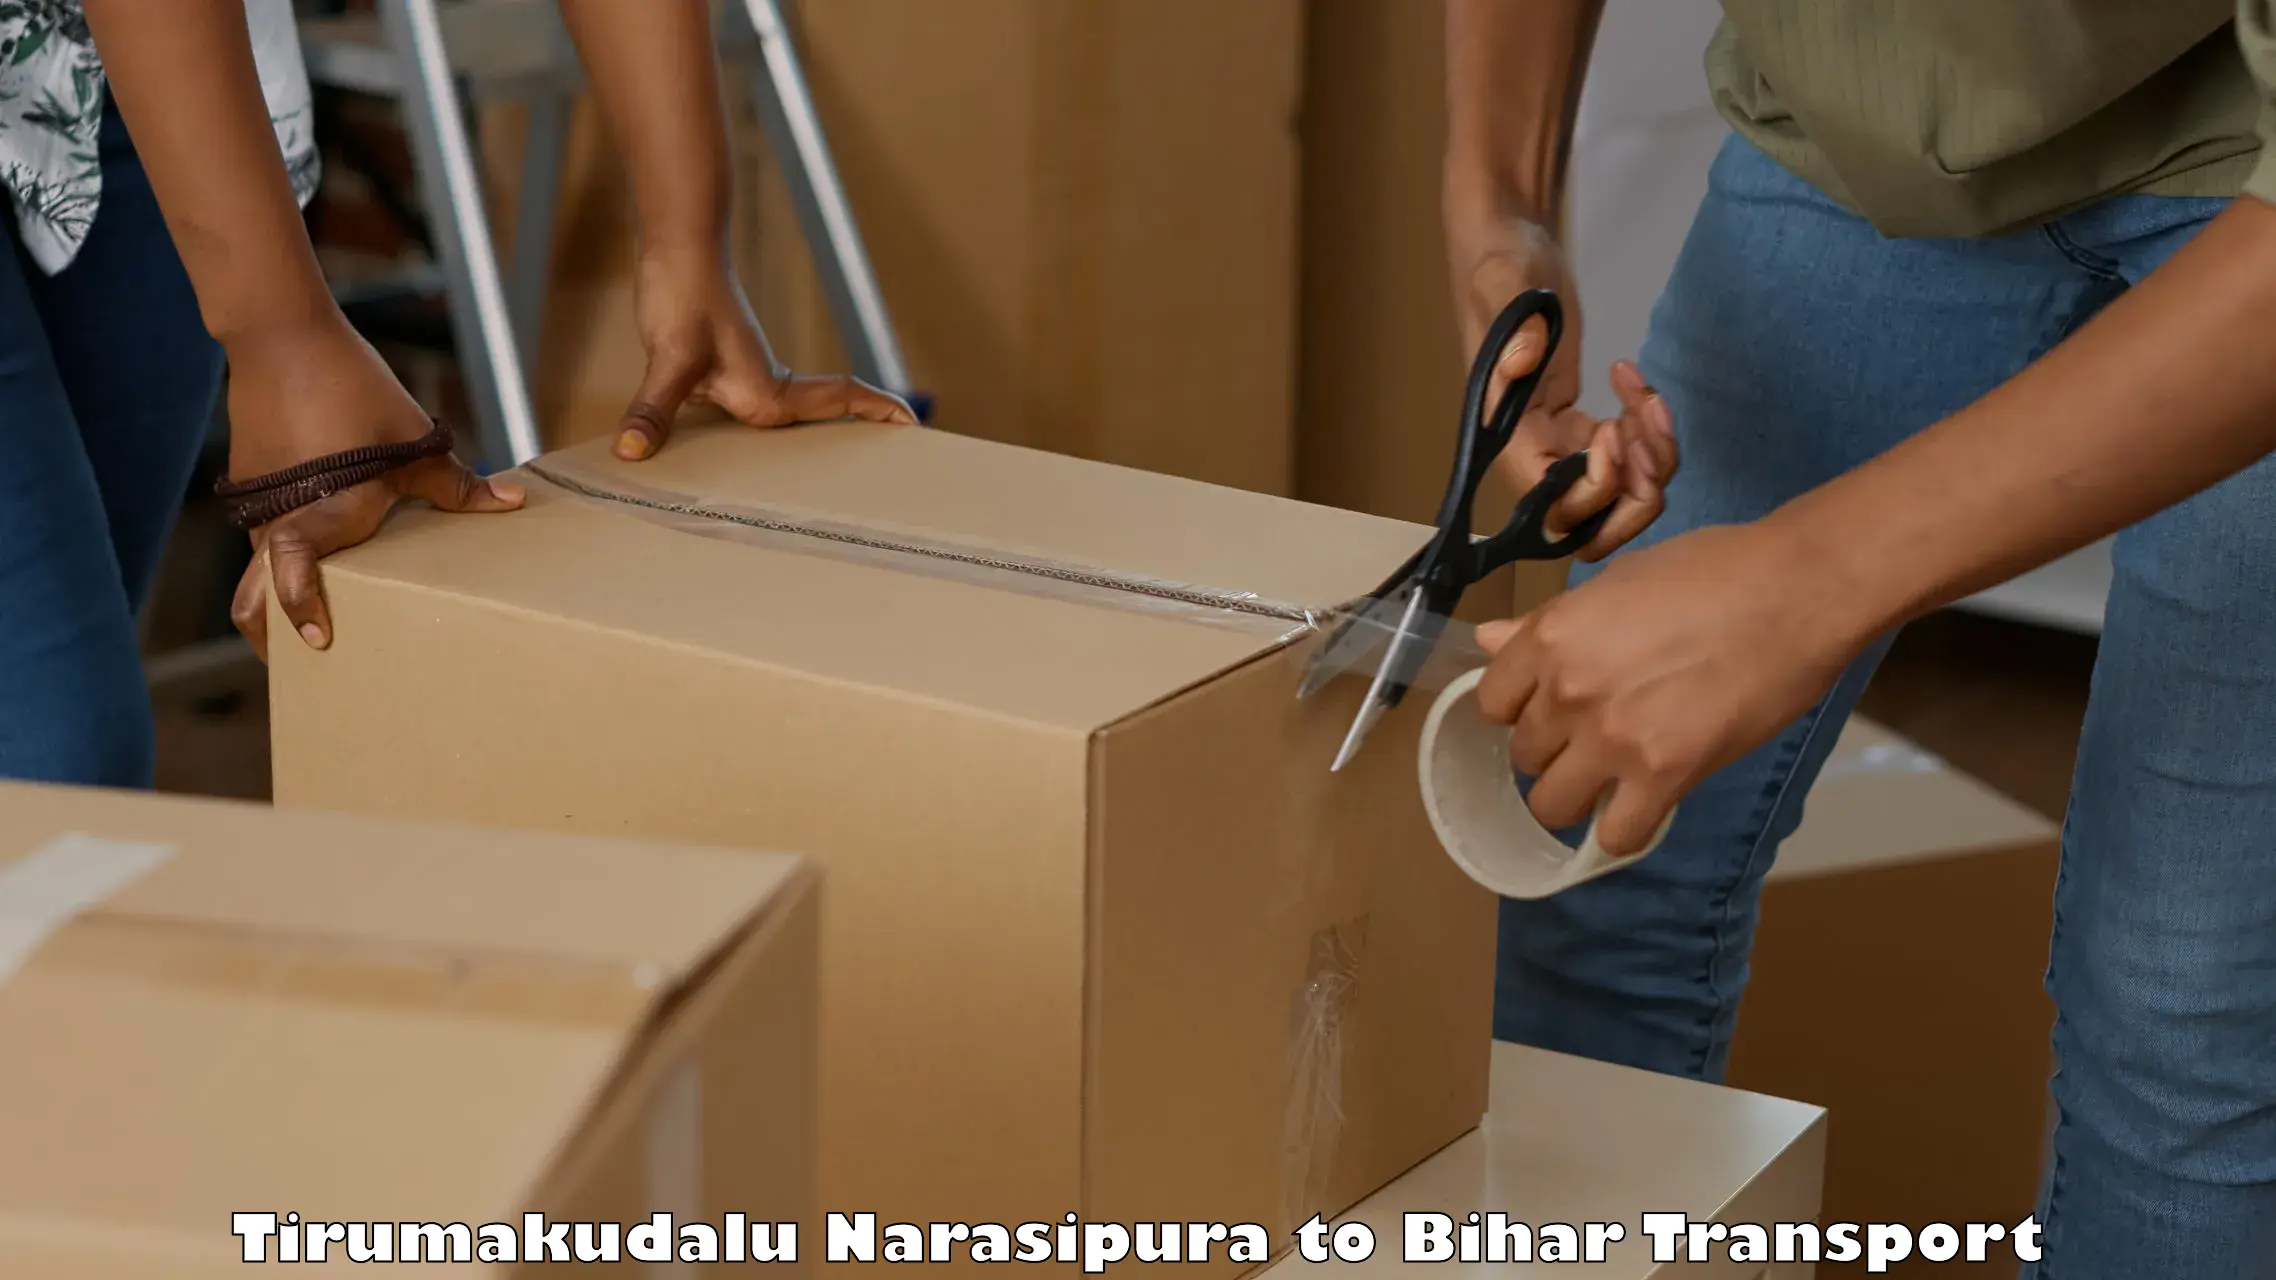 Container transportation services Tirumakudalu Narasipura to Sangrampur